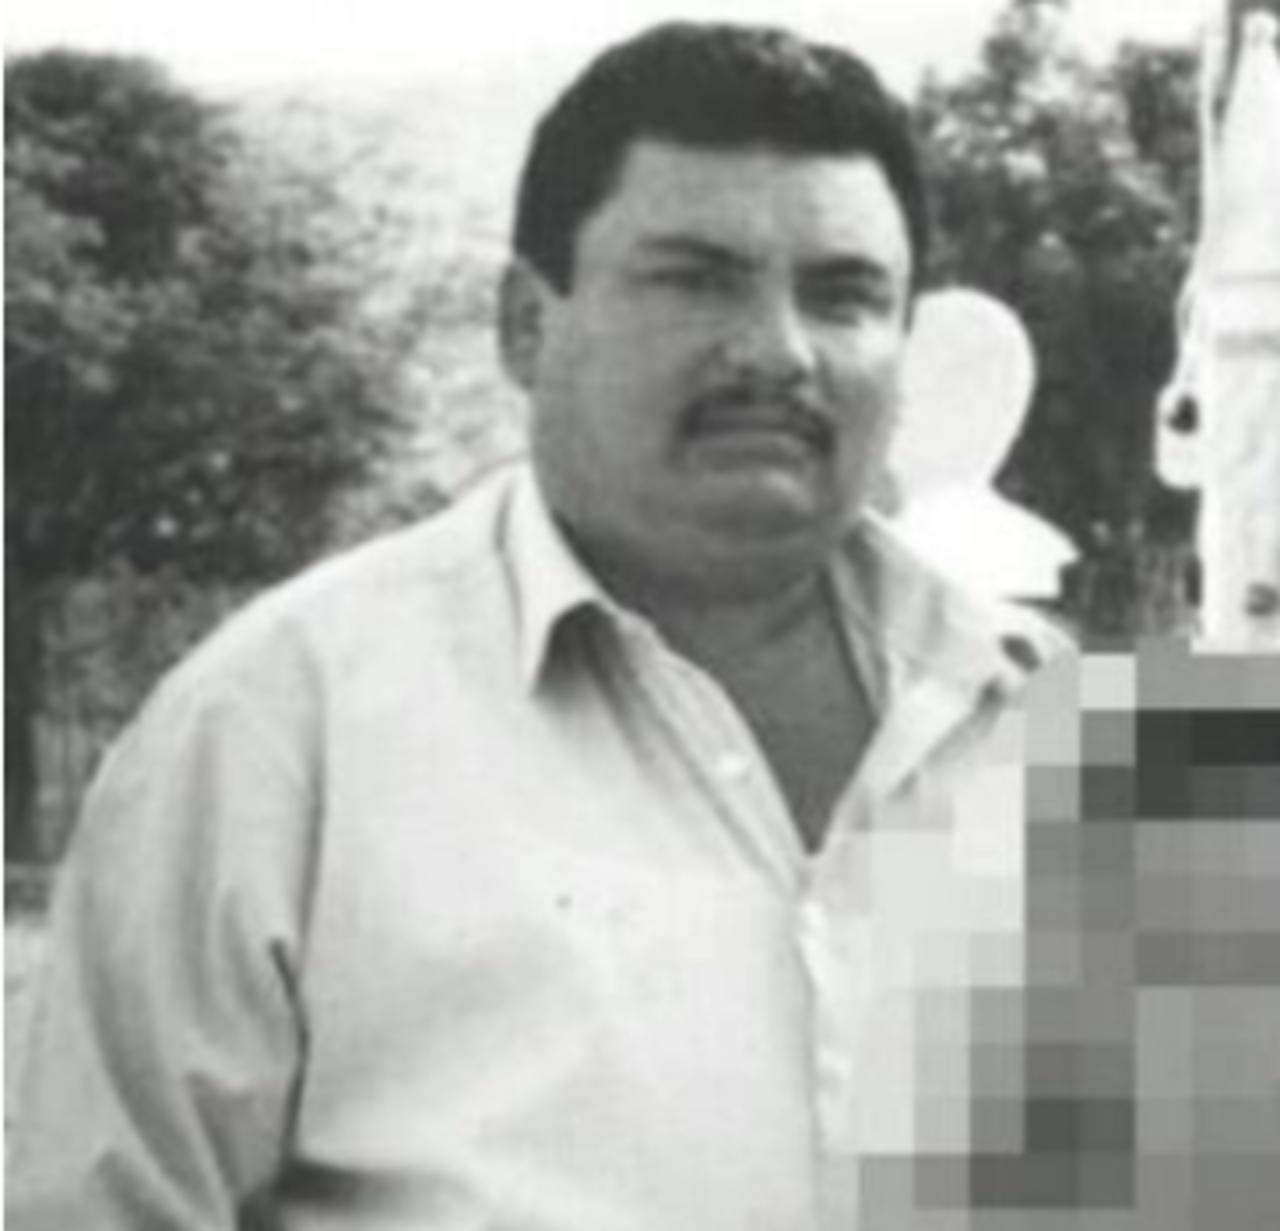 Estados Unidos ofrece 5 millones de dólares por Aureliano Guzmán Loera, hermano de 'El Chapo'